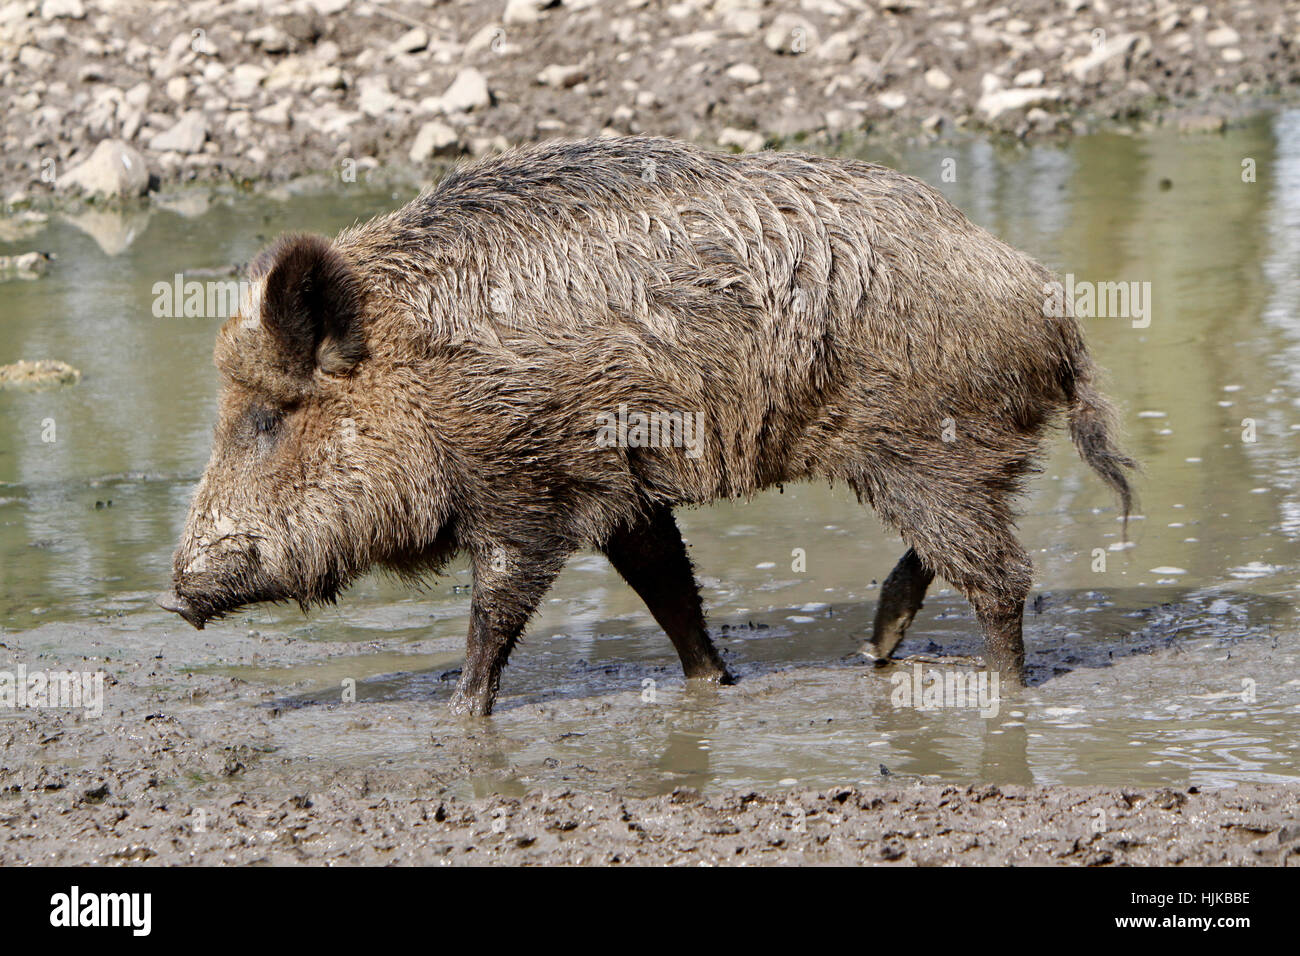 wild, portrait, wild boar, pig, wild animal, wild boars, mammal, wild, Stock Photo